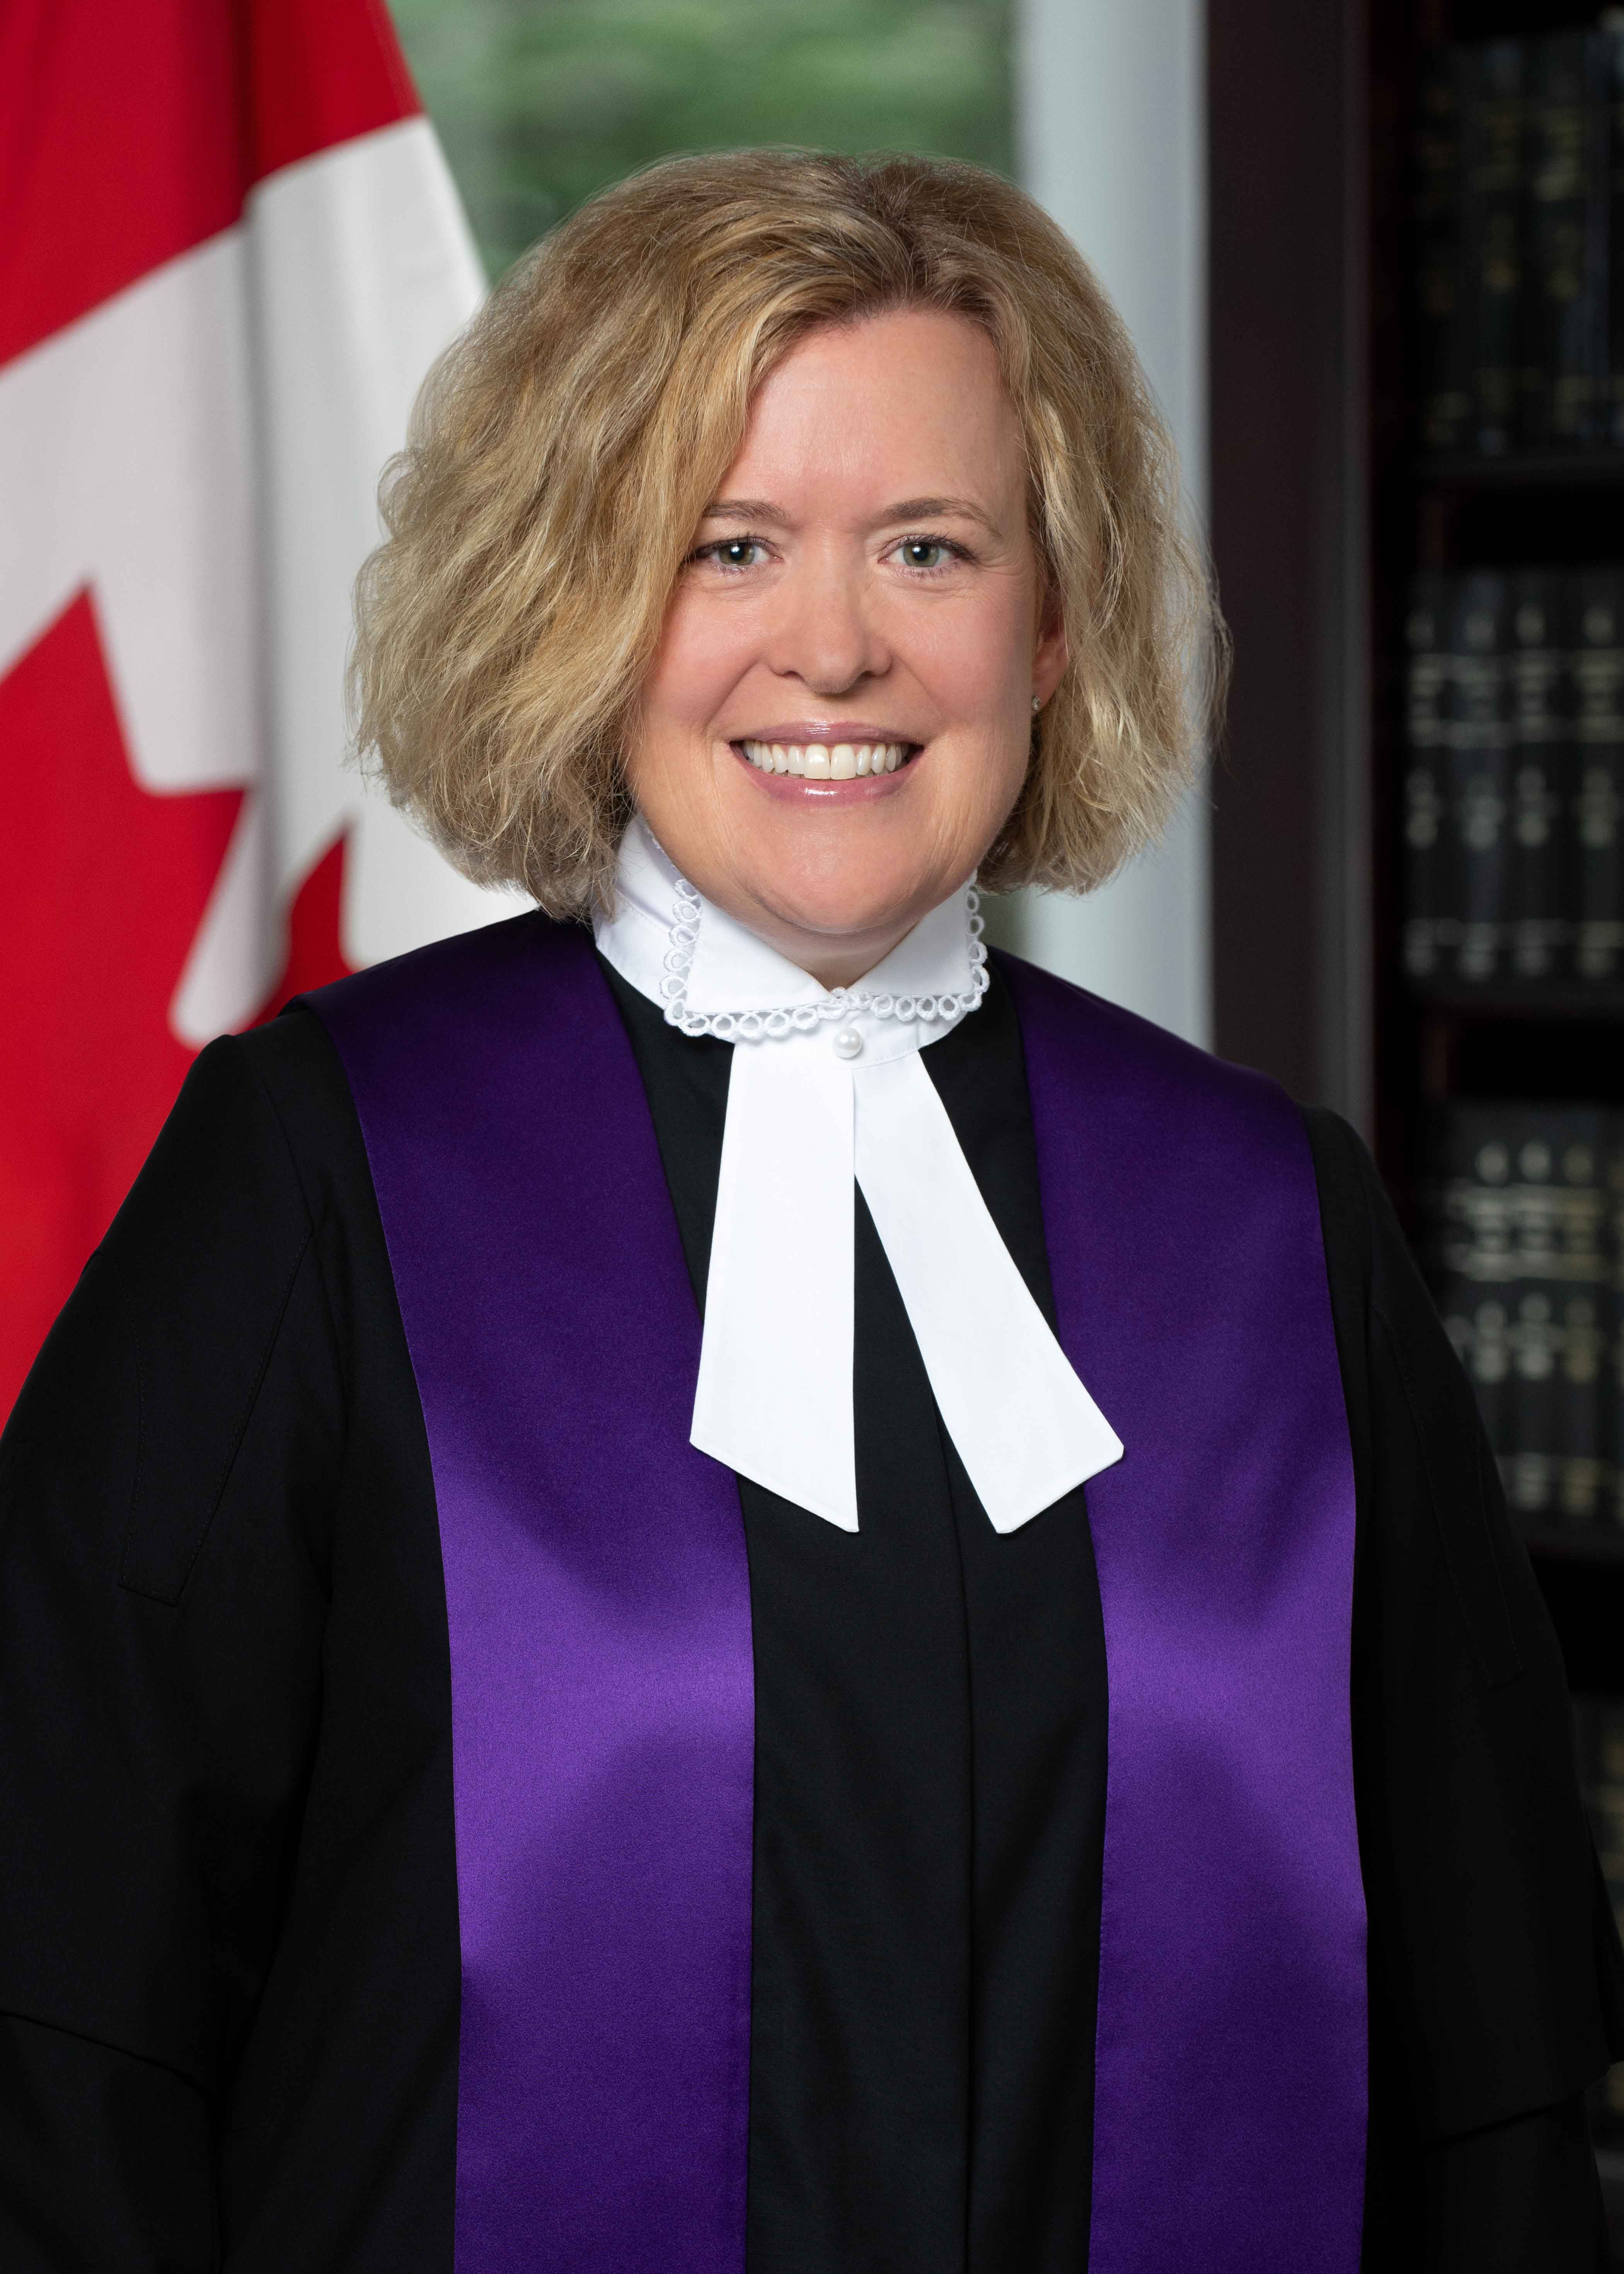 image: The Honourable Dominique Lafleur